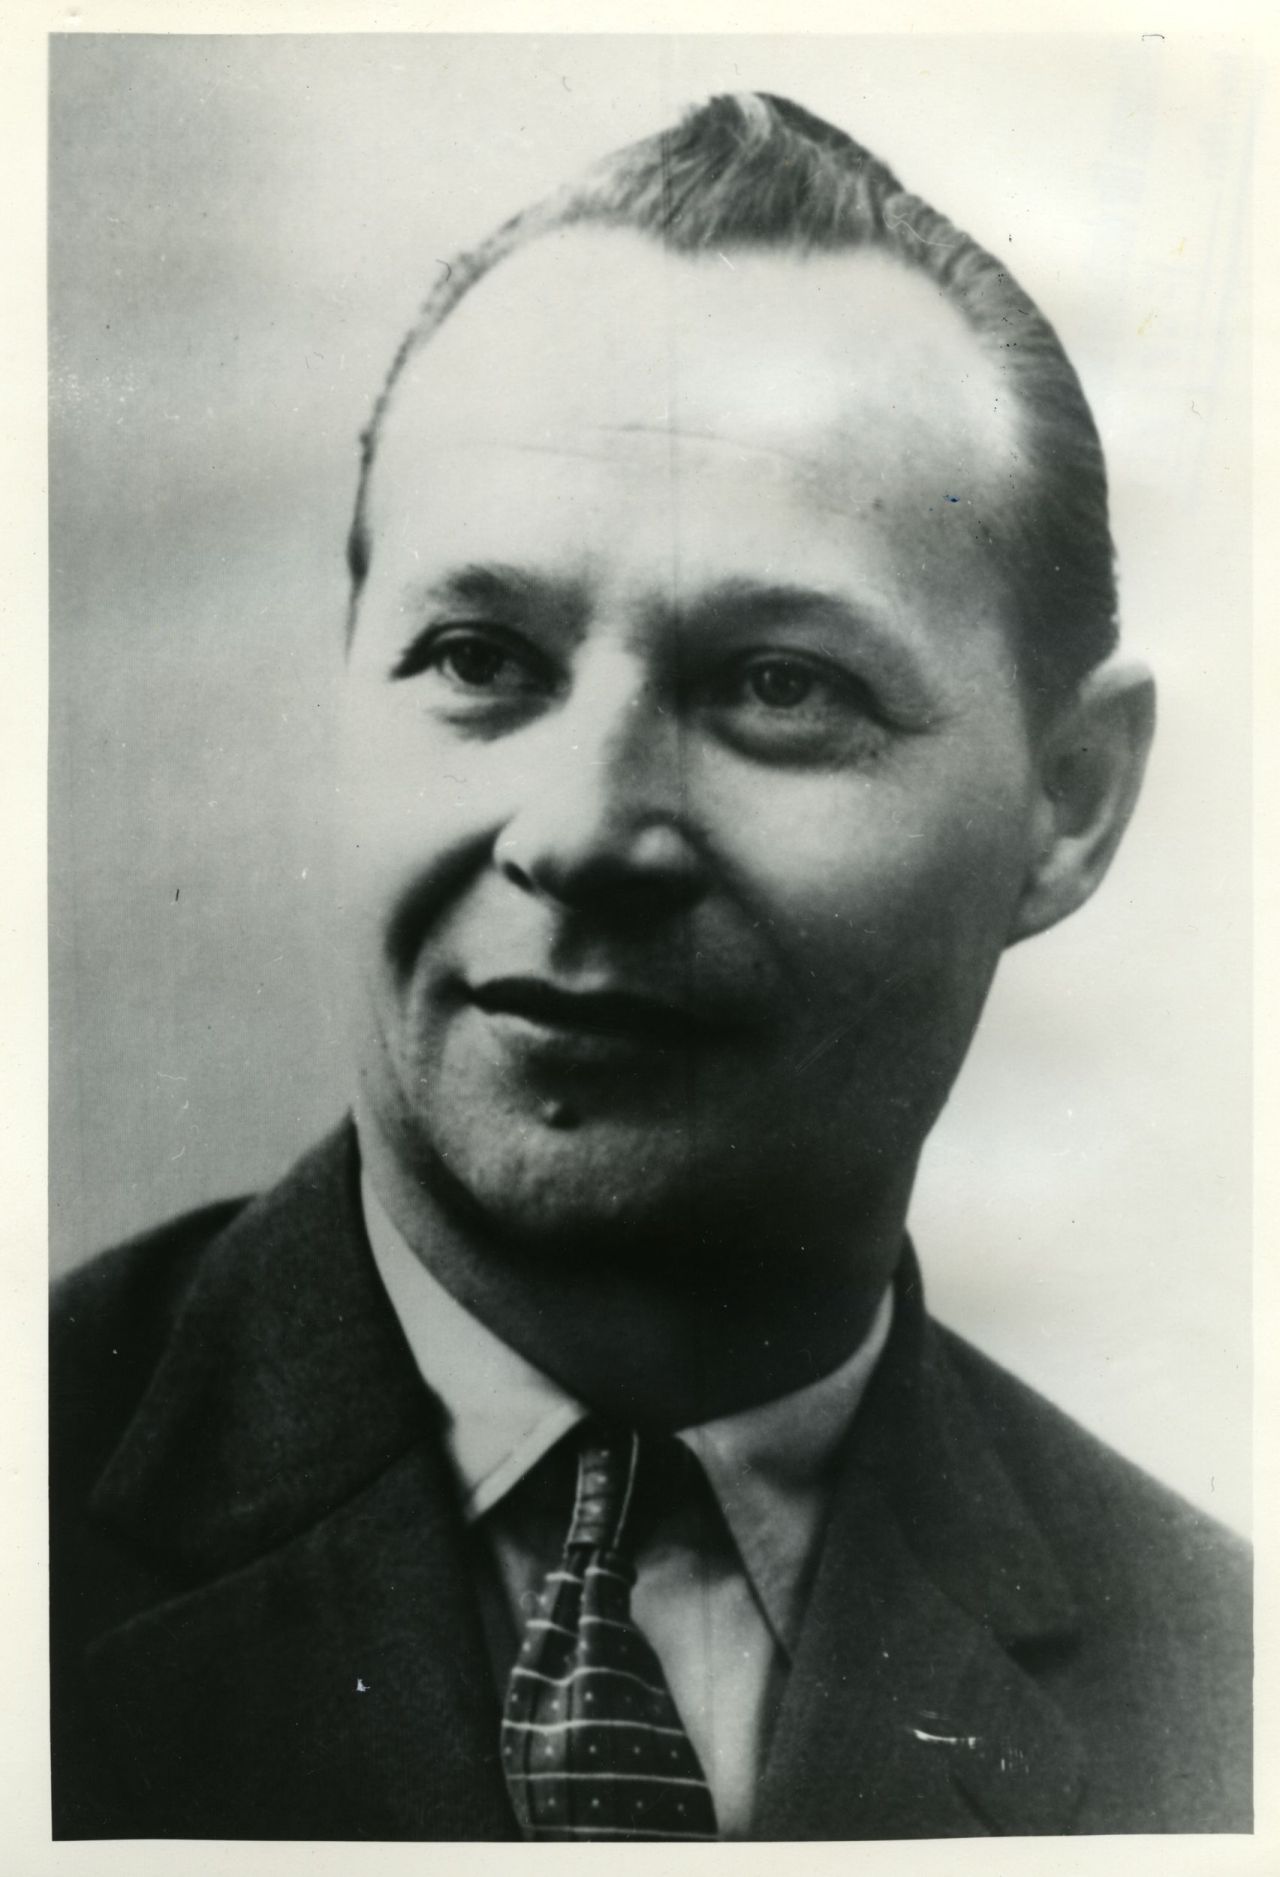 Fotografie des tschechoslowakischen Politikers Alexander Dubcek, 1963-1968.